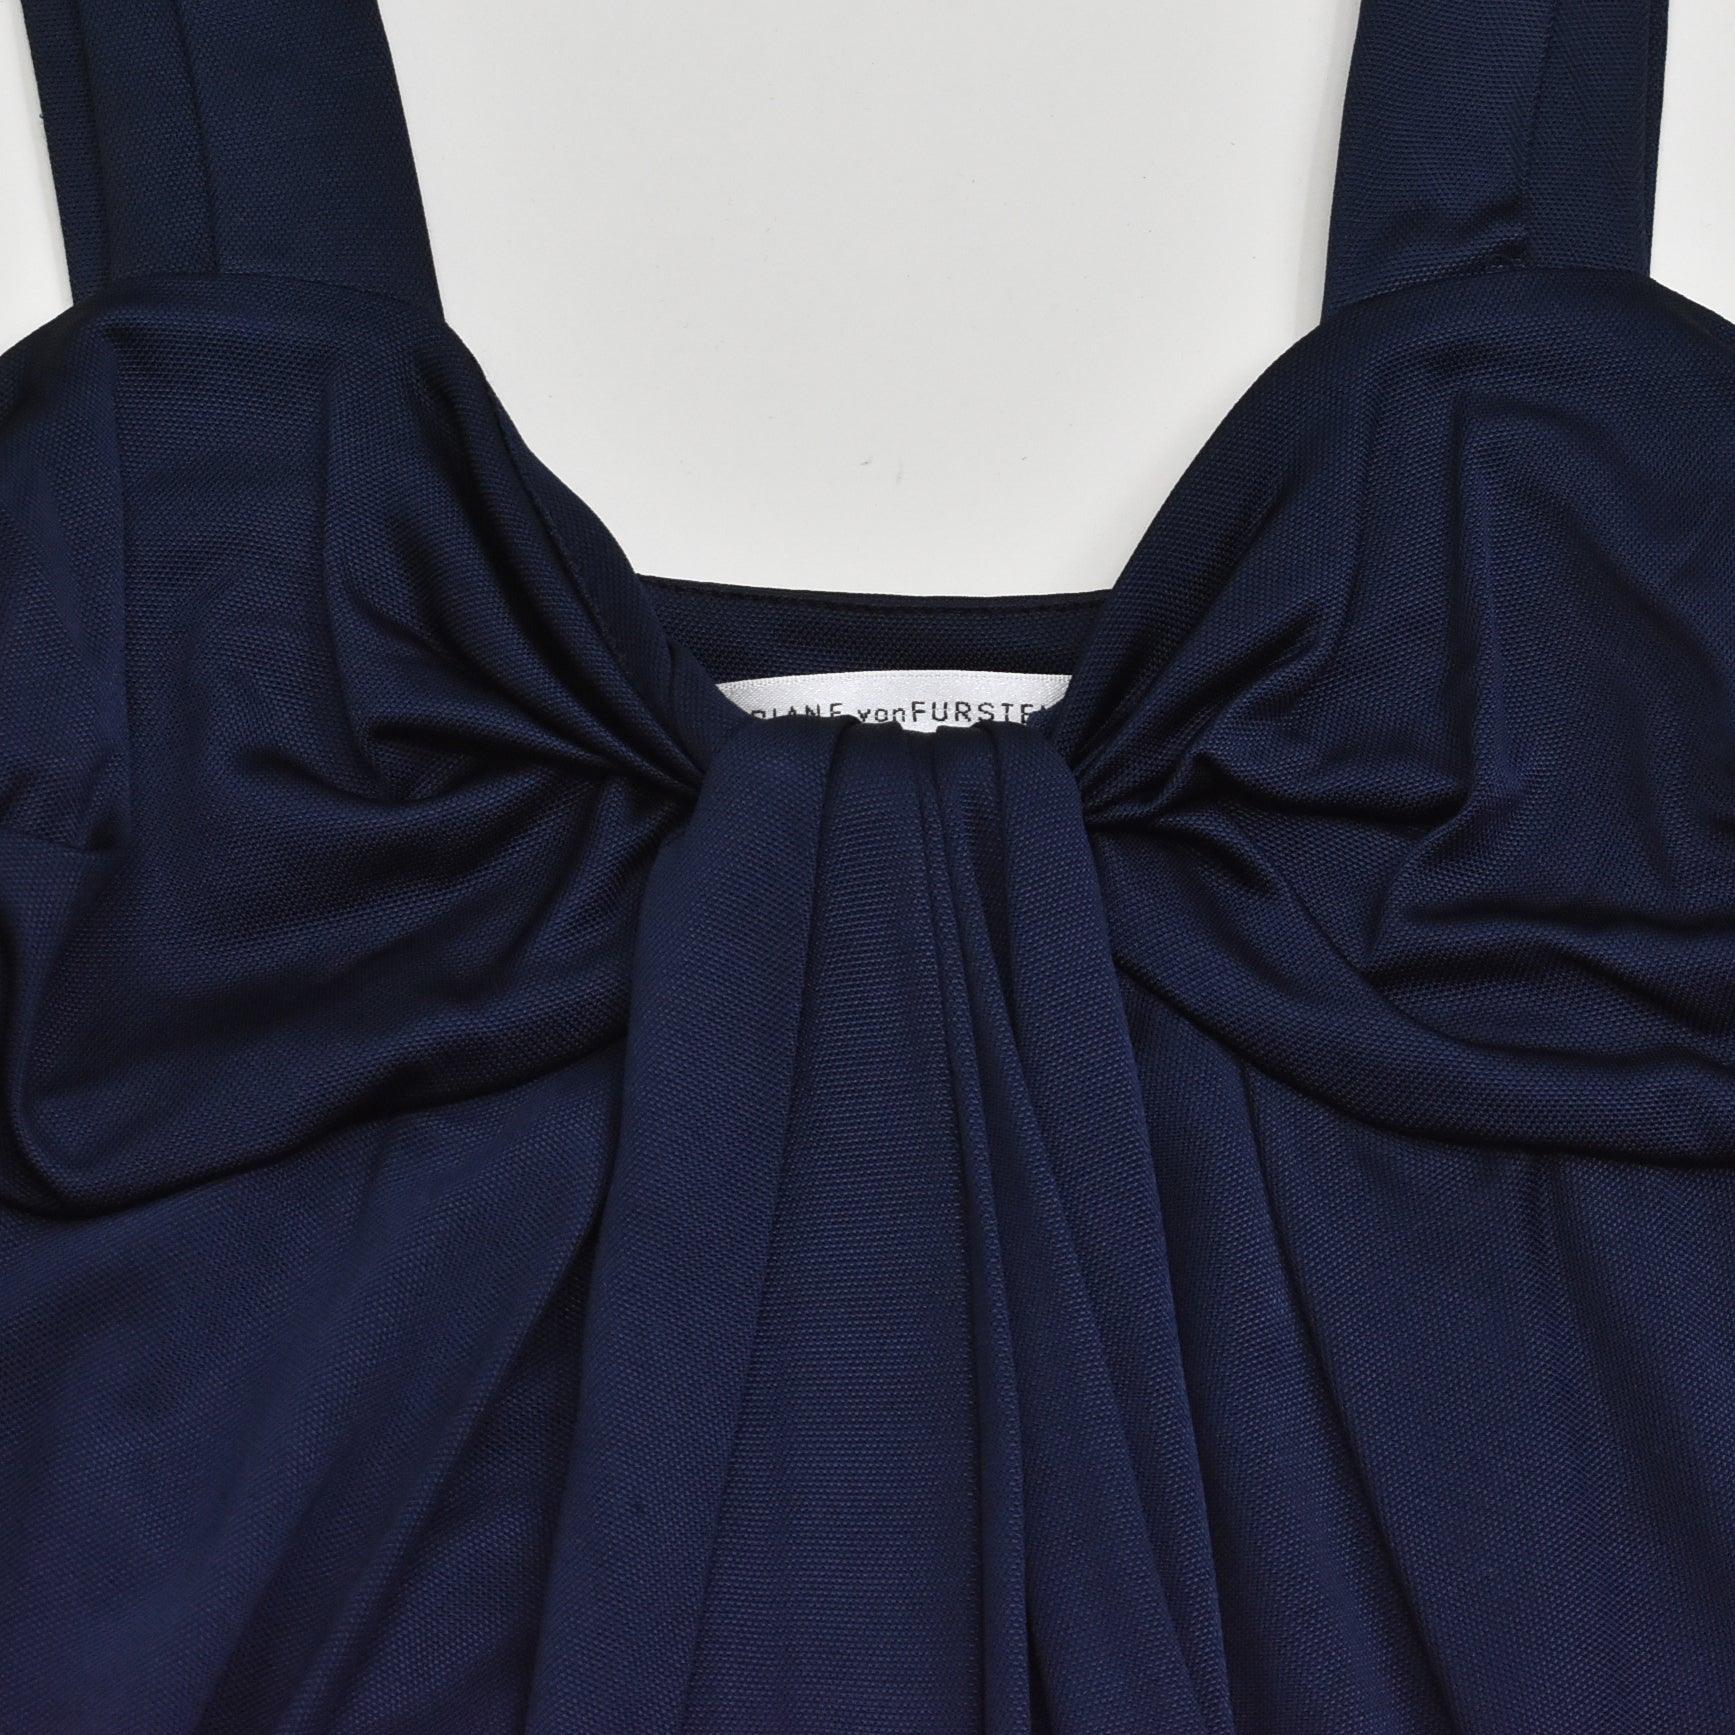 Diane Von Furstenberg Mini Dress - Women's 0 - Fashionably Yours